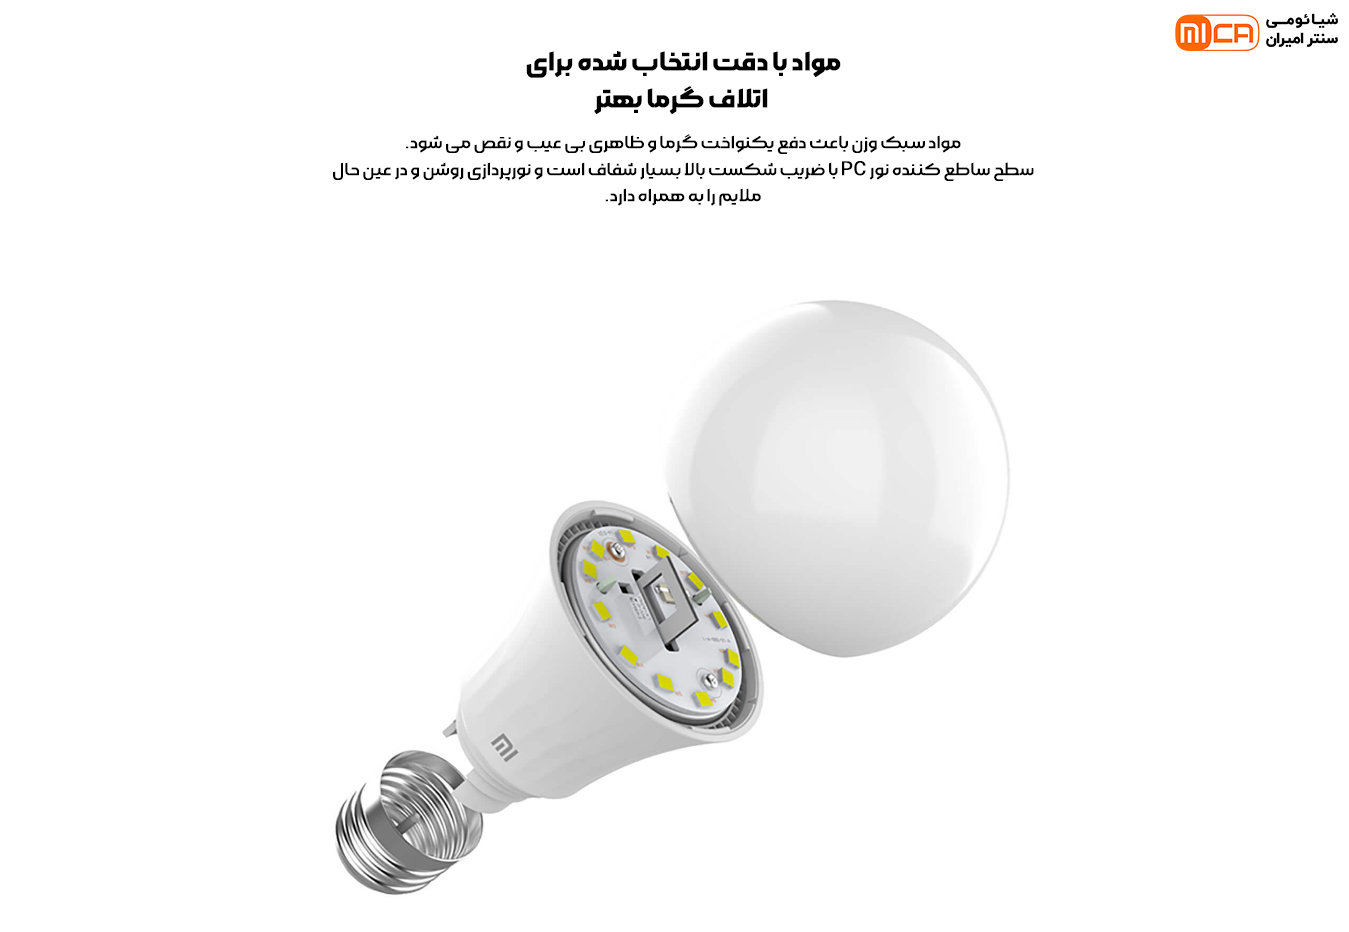 لامپ هوشمند شیائومی مدل Xiaomi Mi Smart LED Bulb